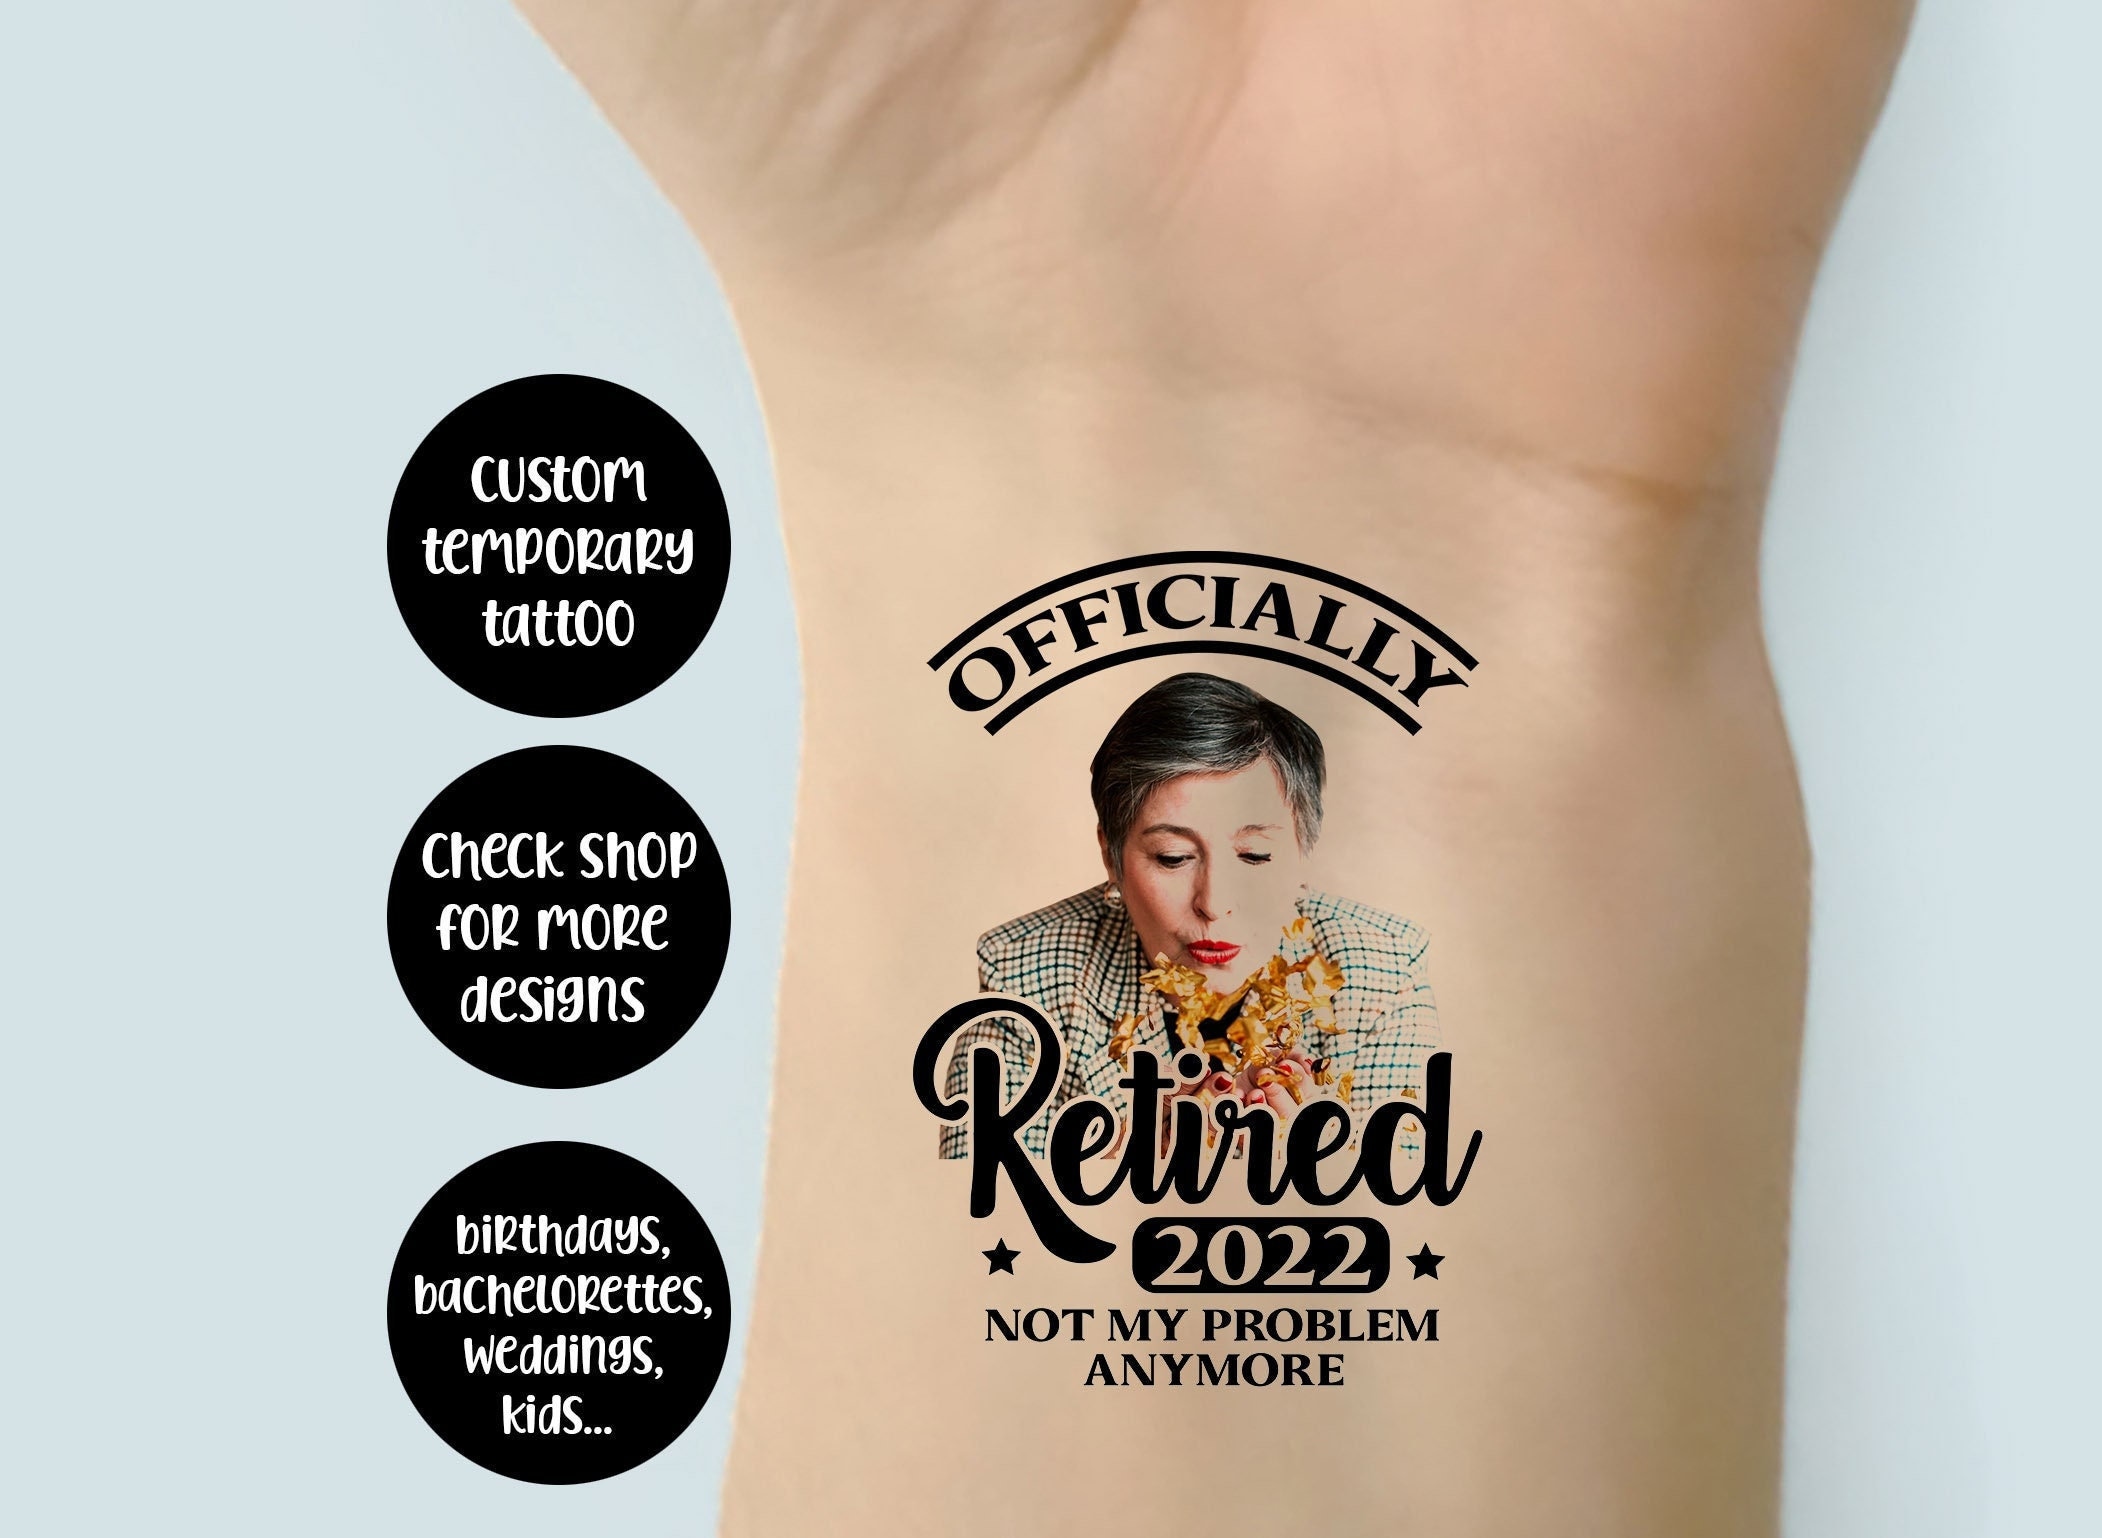 Retirement tattoo ideas